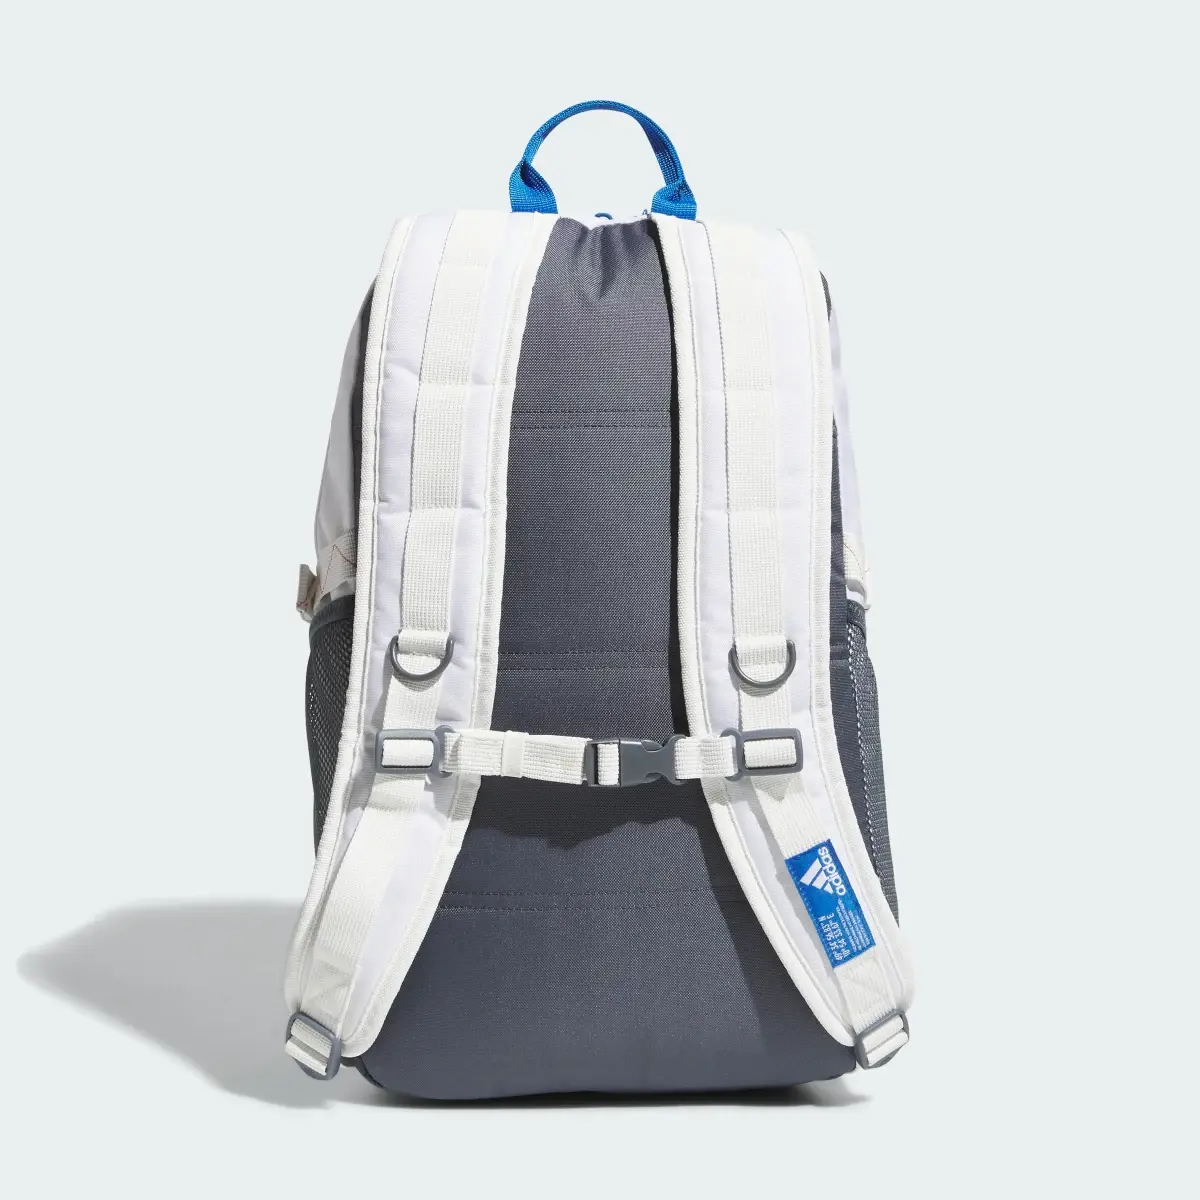 Adidas Energy Backpack. 3